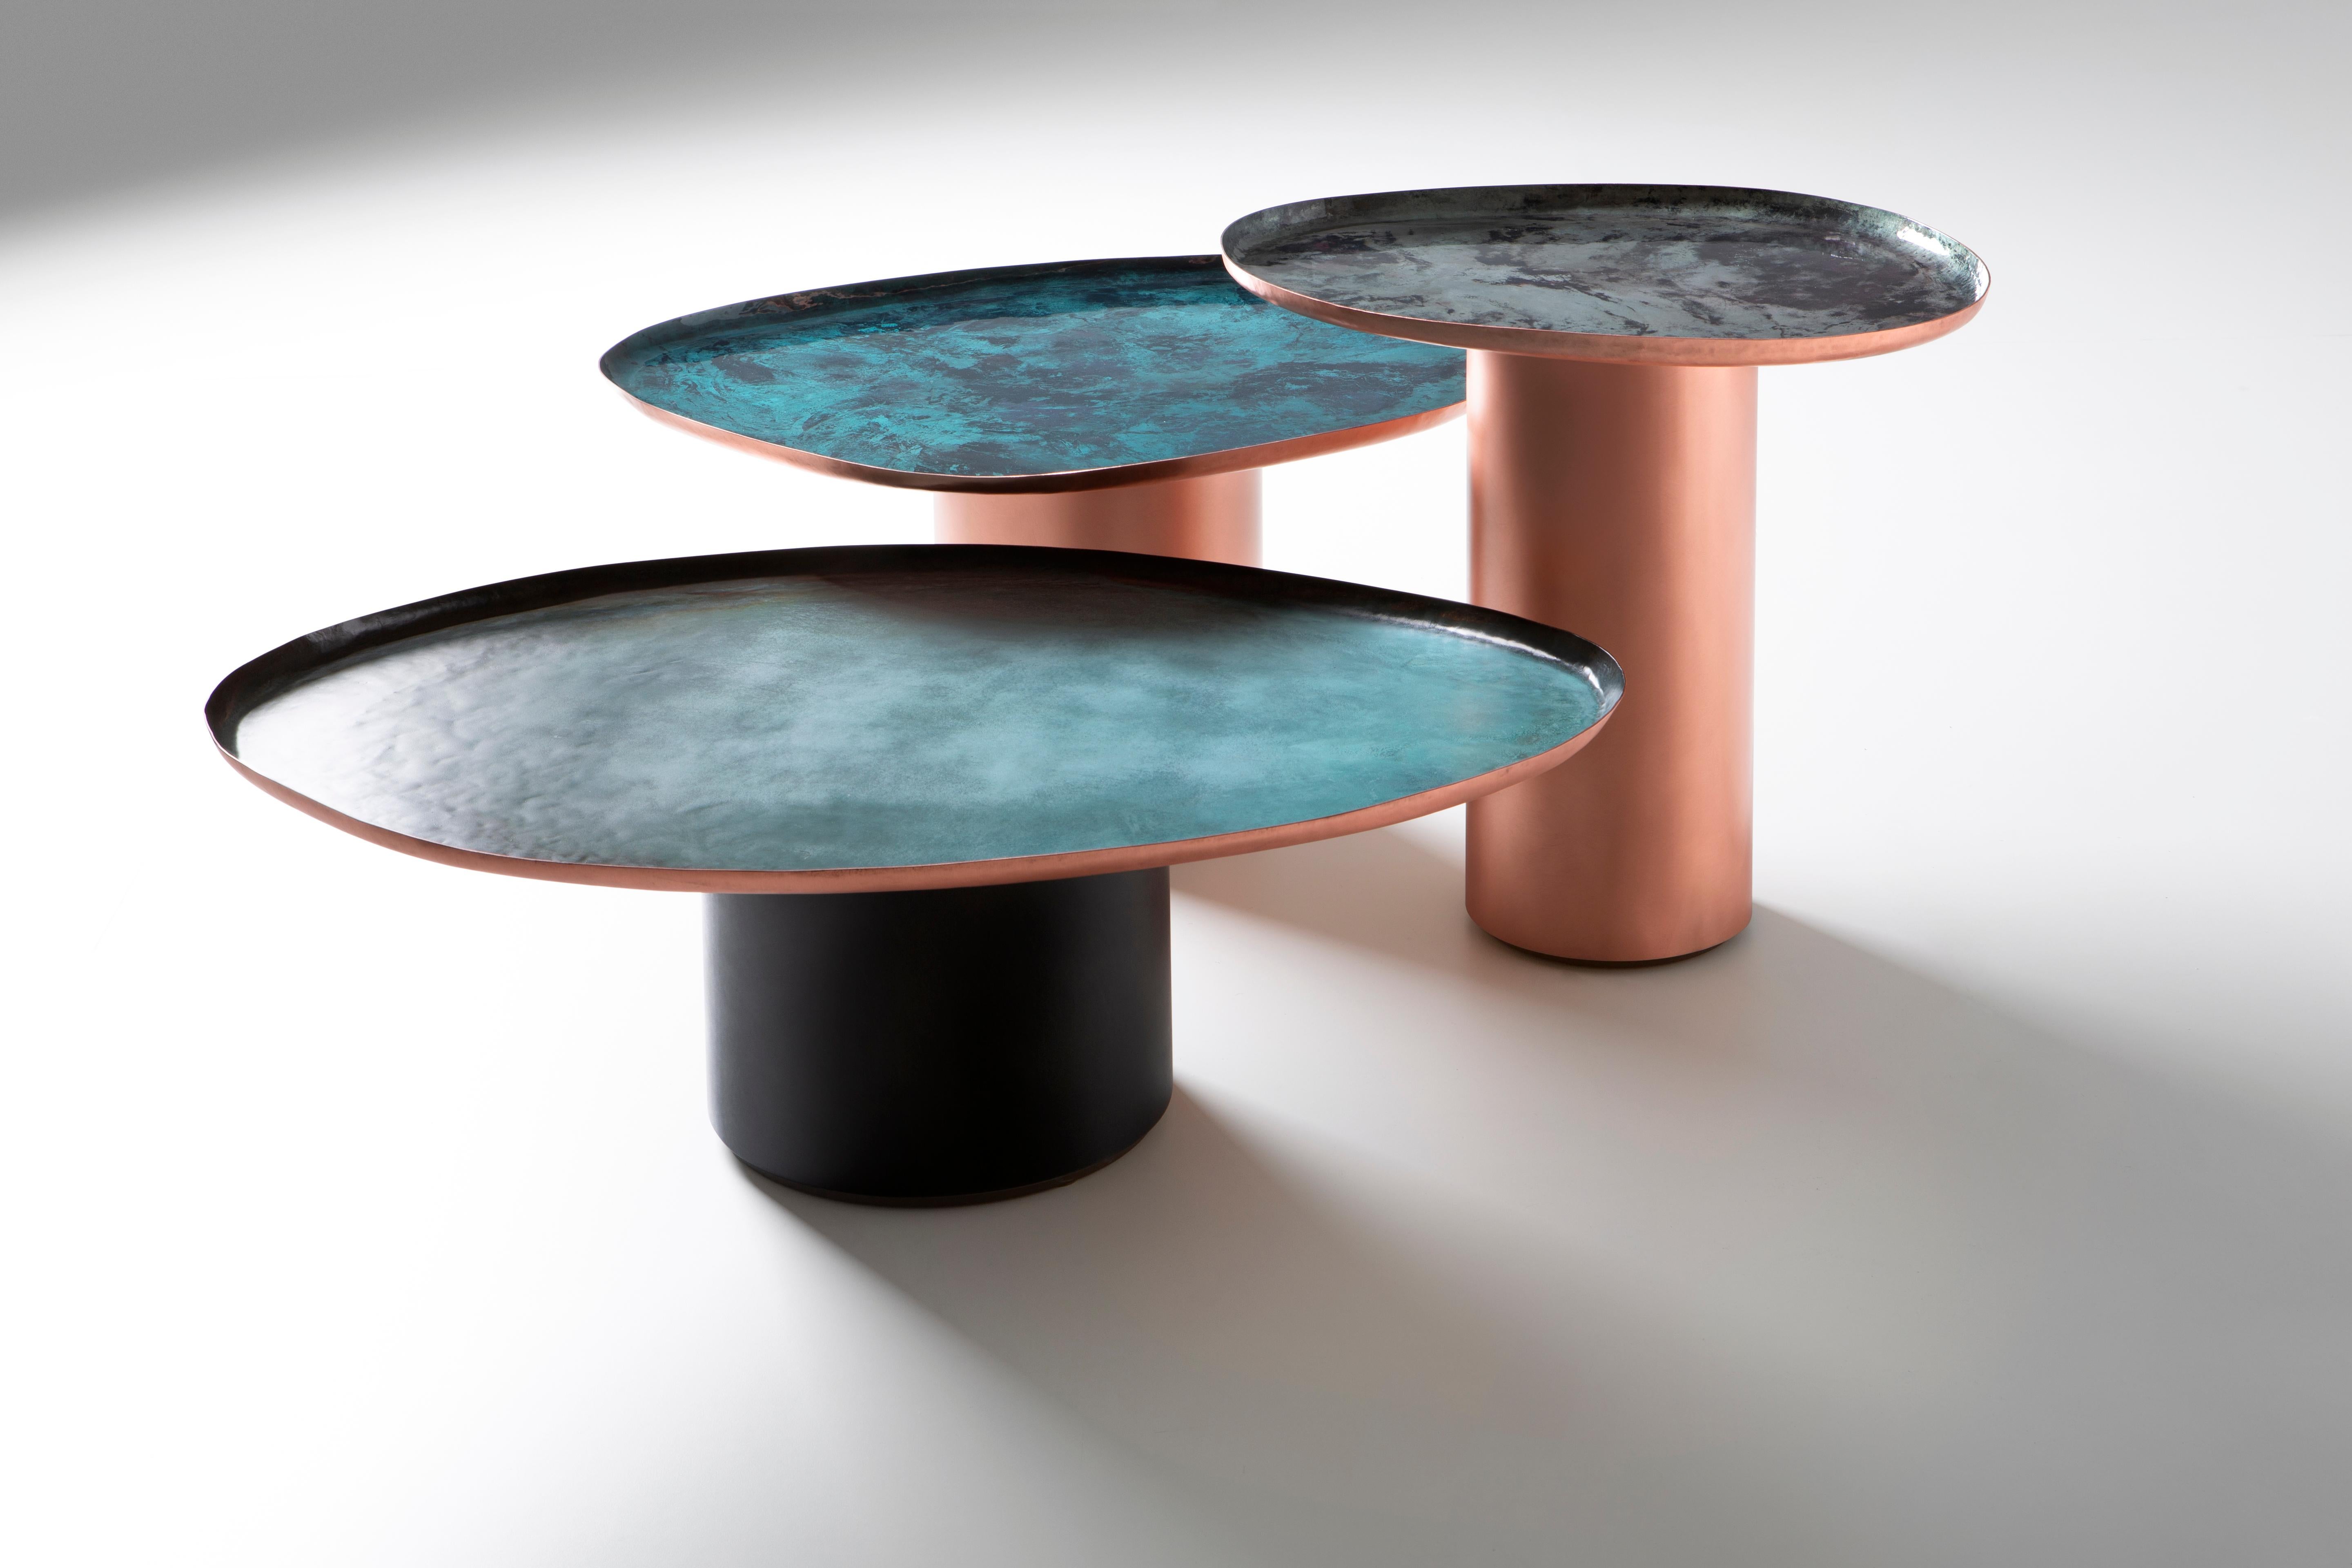 Drops est une famille de tables basses de trois tailles différentes, inspirées par les formes irrégulières et inattendues des gouttes d'eau sur une surface. Leurs lignes douces et familières incarnent le savoir-faire artisanal de De Castelli, qui a